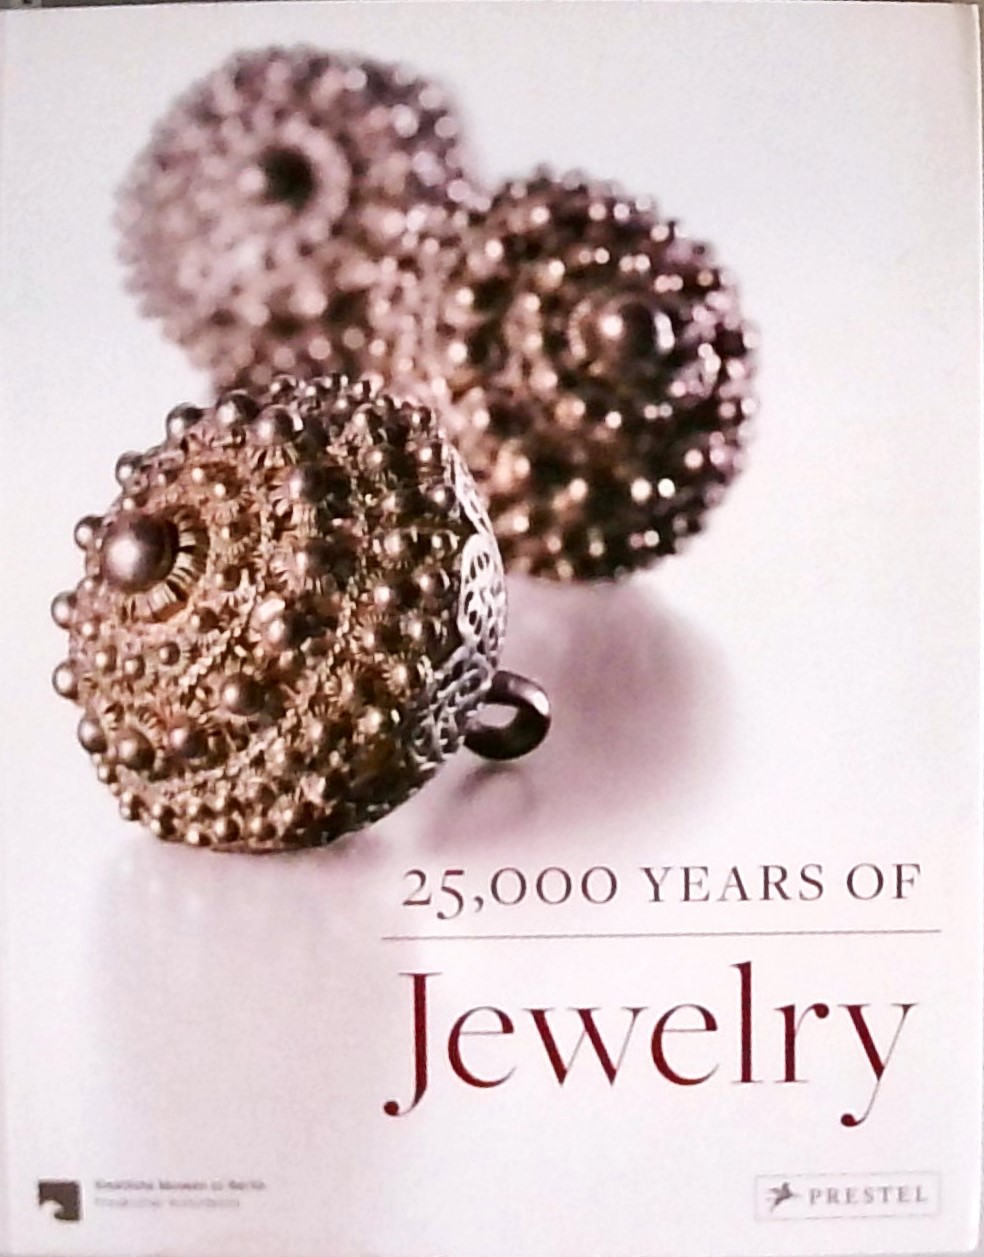 25,000 Years of Jewelry - Eichhorn-Johannsen, Maren, Adelheid Rasche and Astrid Bahr